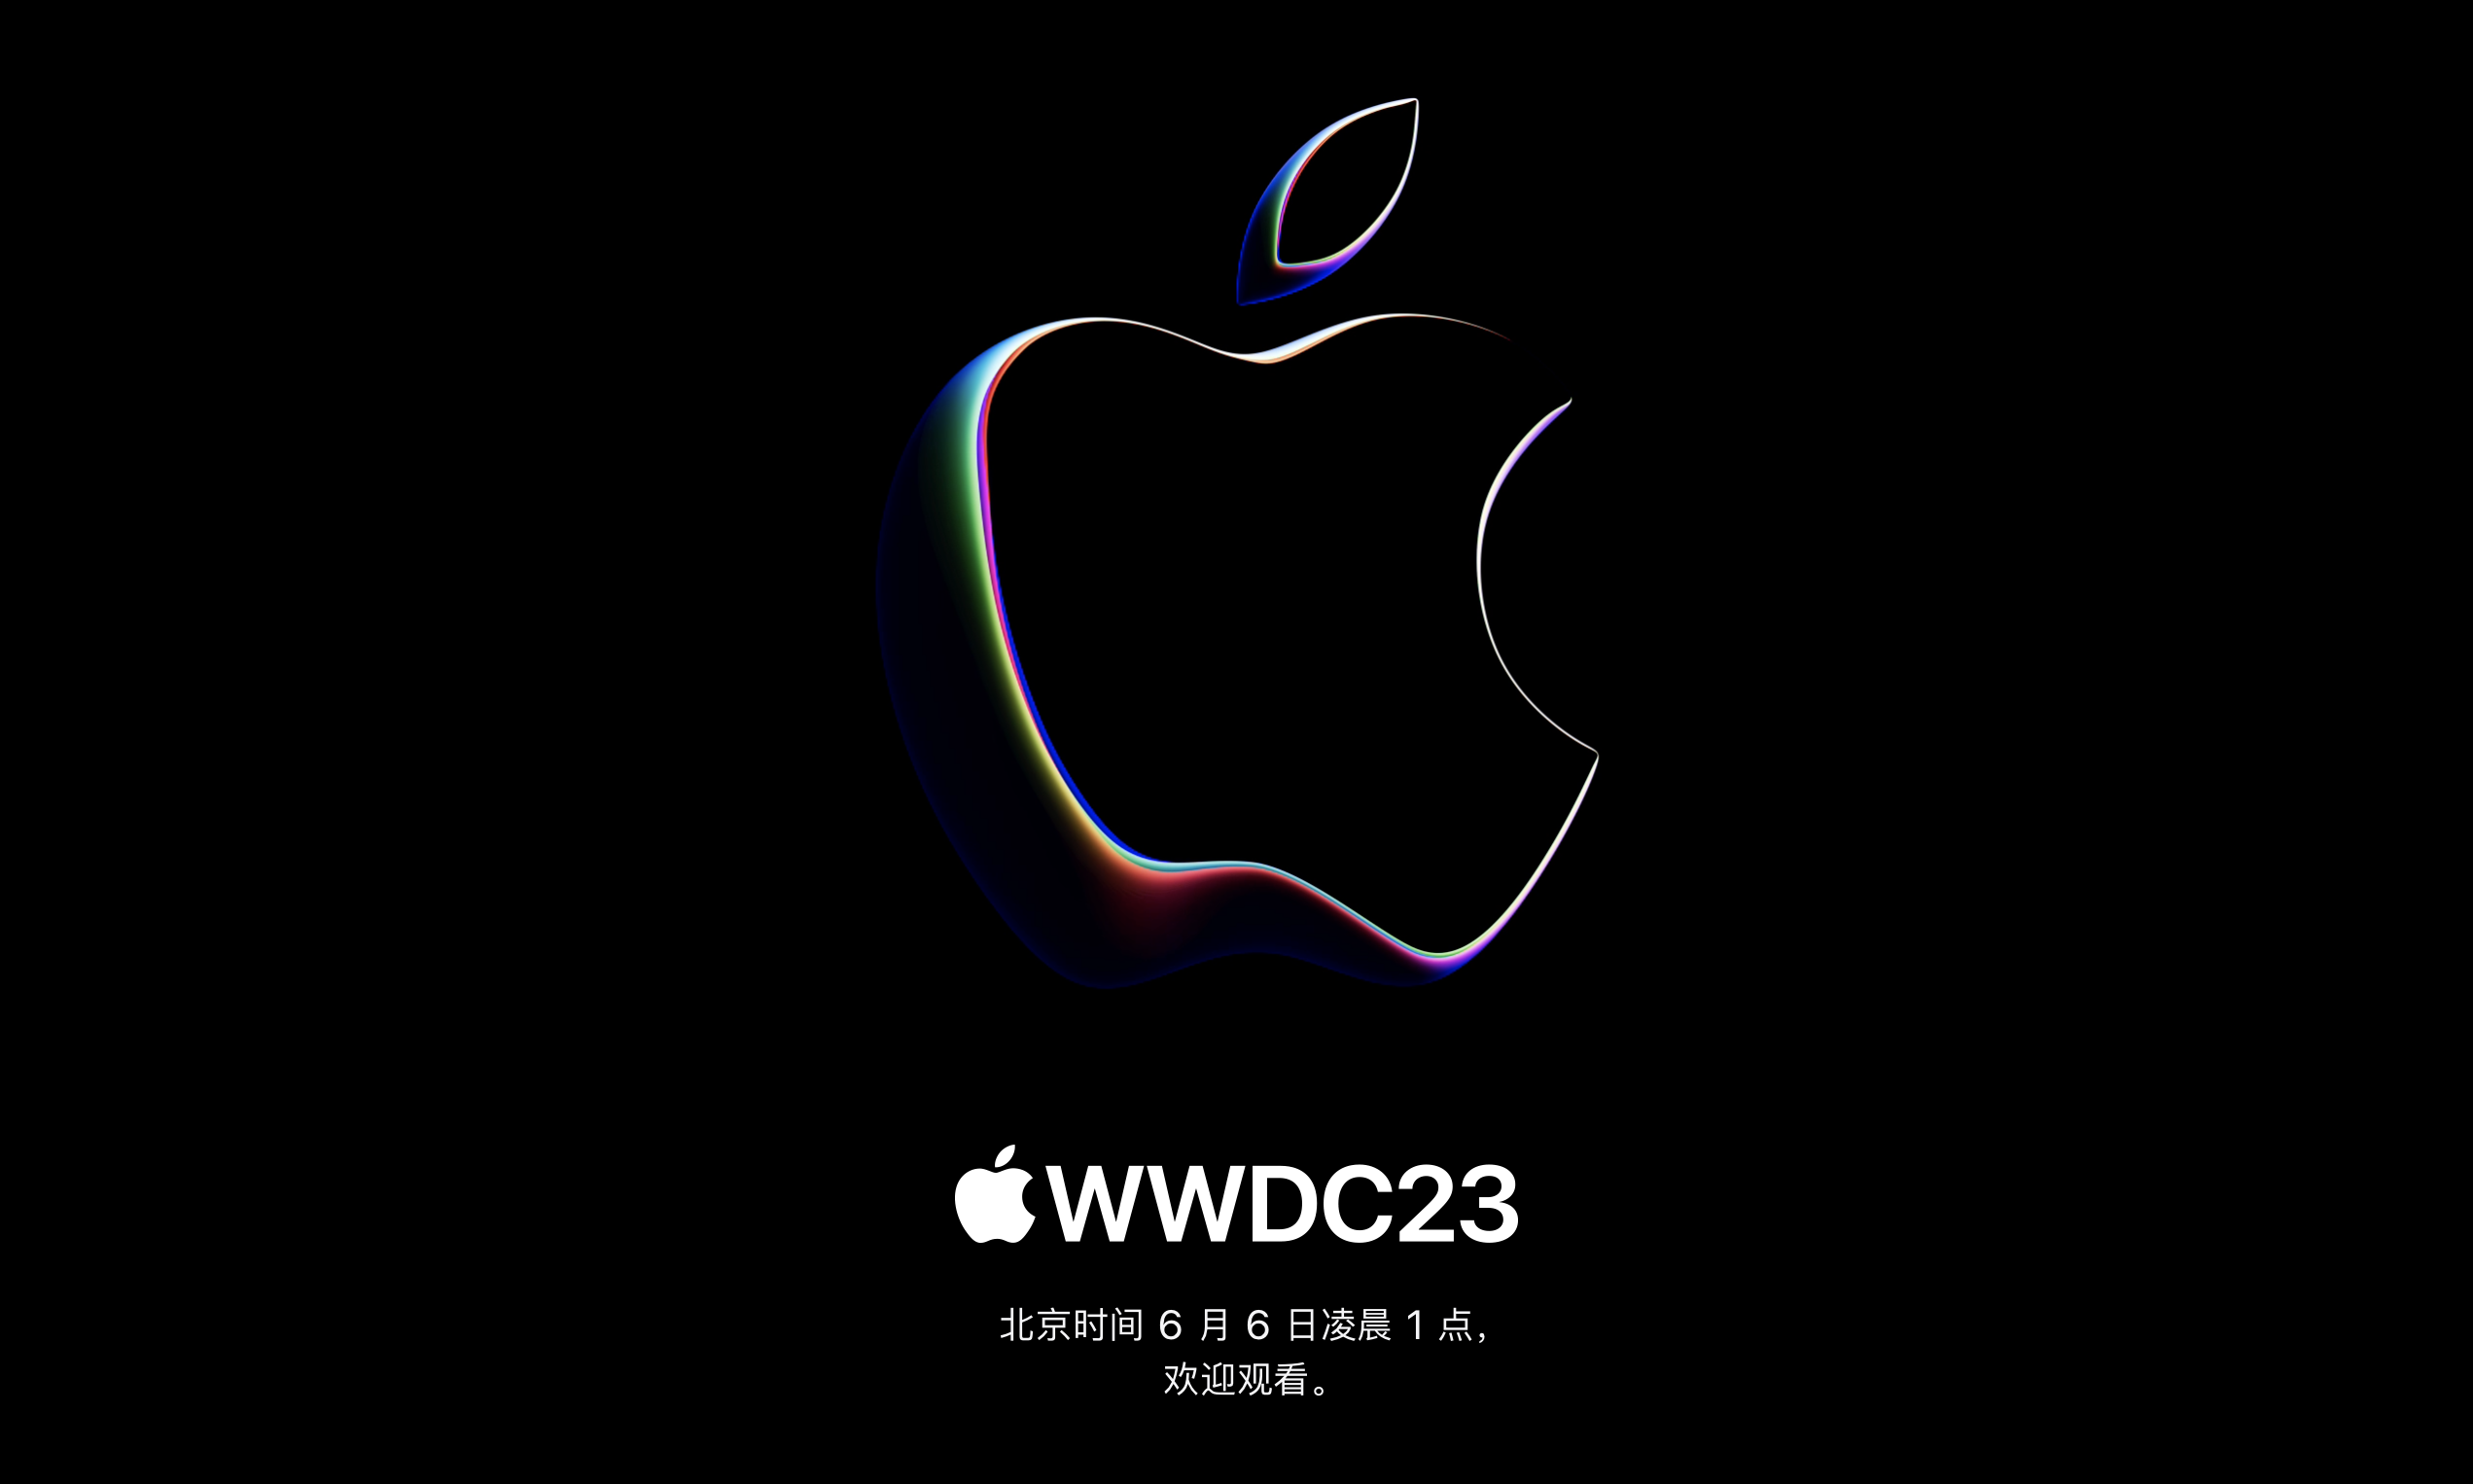 苹果发布 WWDC23 预告，第一代头显设备即将发布